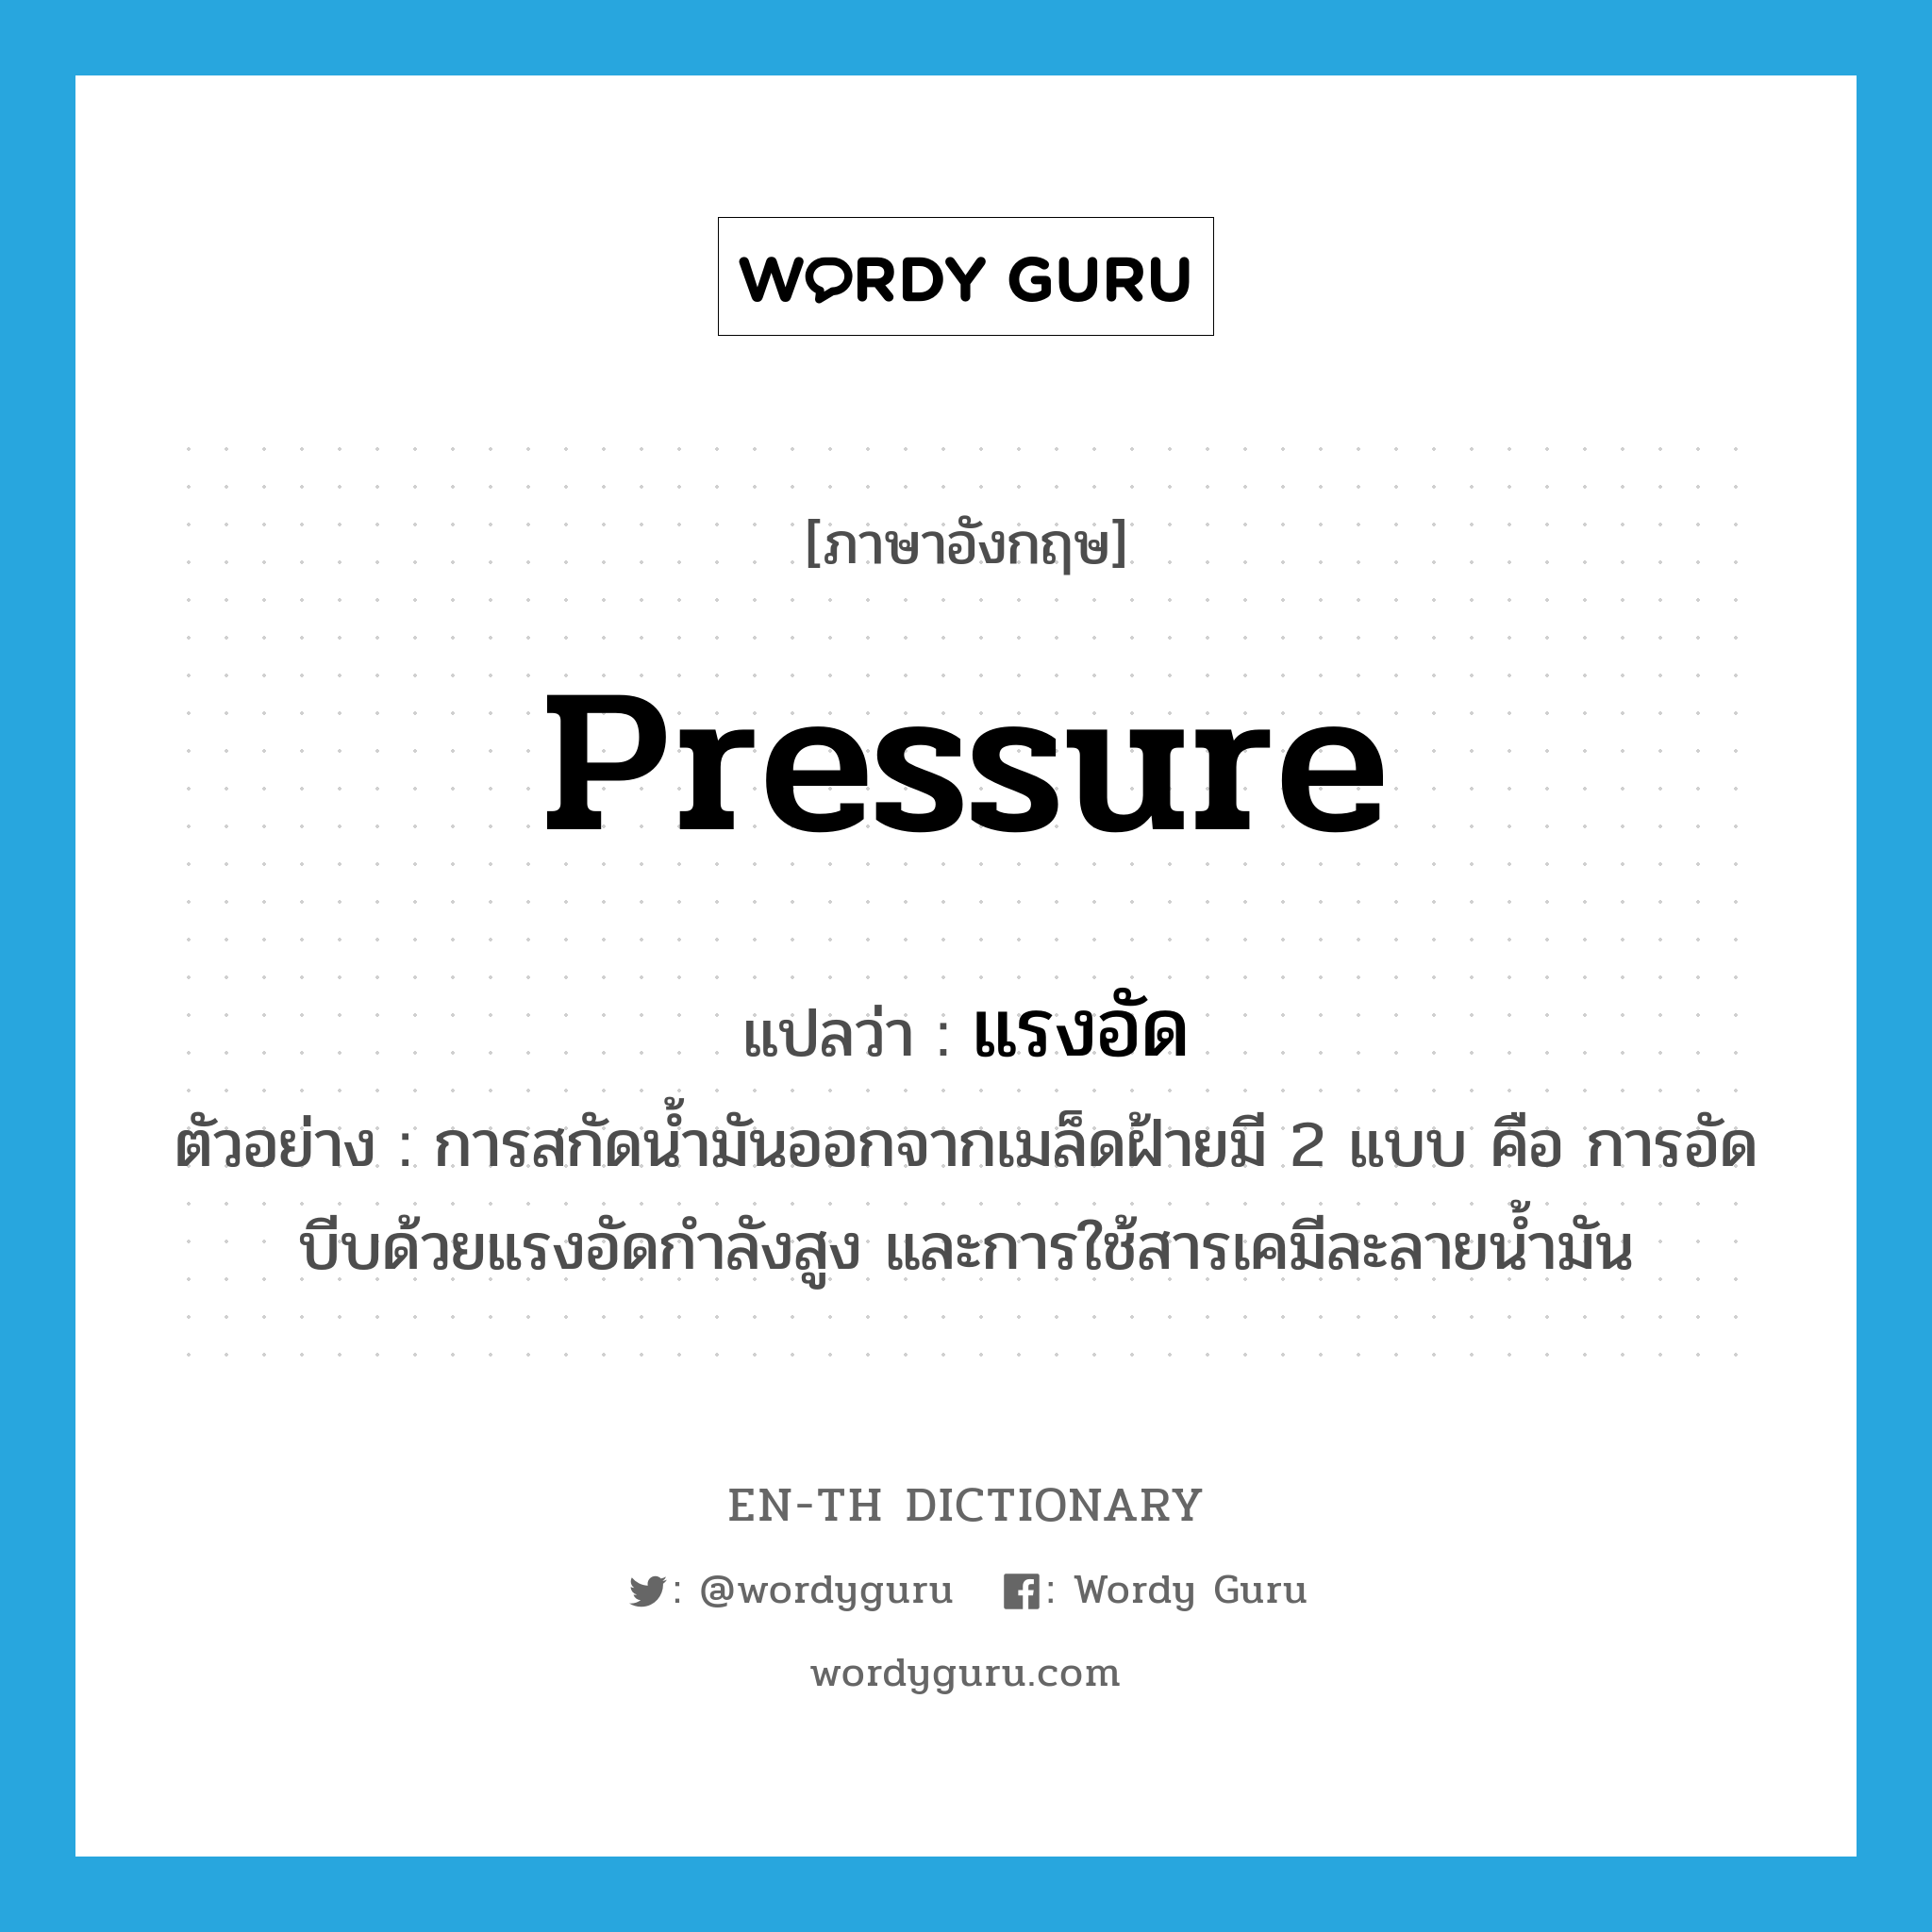 pressure แปลว่า?, คำศัพท์ภาษาอังกฤษ pressure แปลว่า แรงอัด ประเภท N ตัวอย่าง การสกัดน้ำมันออกจากเมล็ดฝ้ายมี 2 แบบ คือ การอัดบีบด้วยแรงอัดกำลังสูง และการใช้สารเคมีละลายน้ำมัน หมวด N